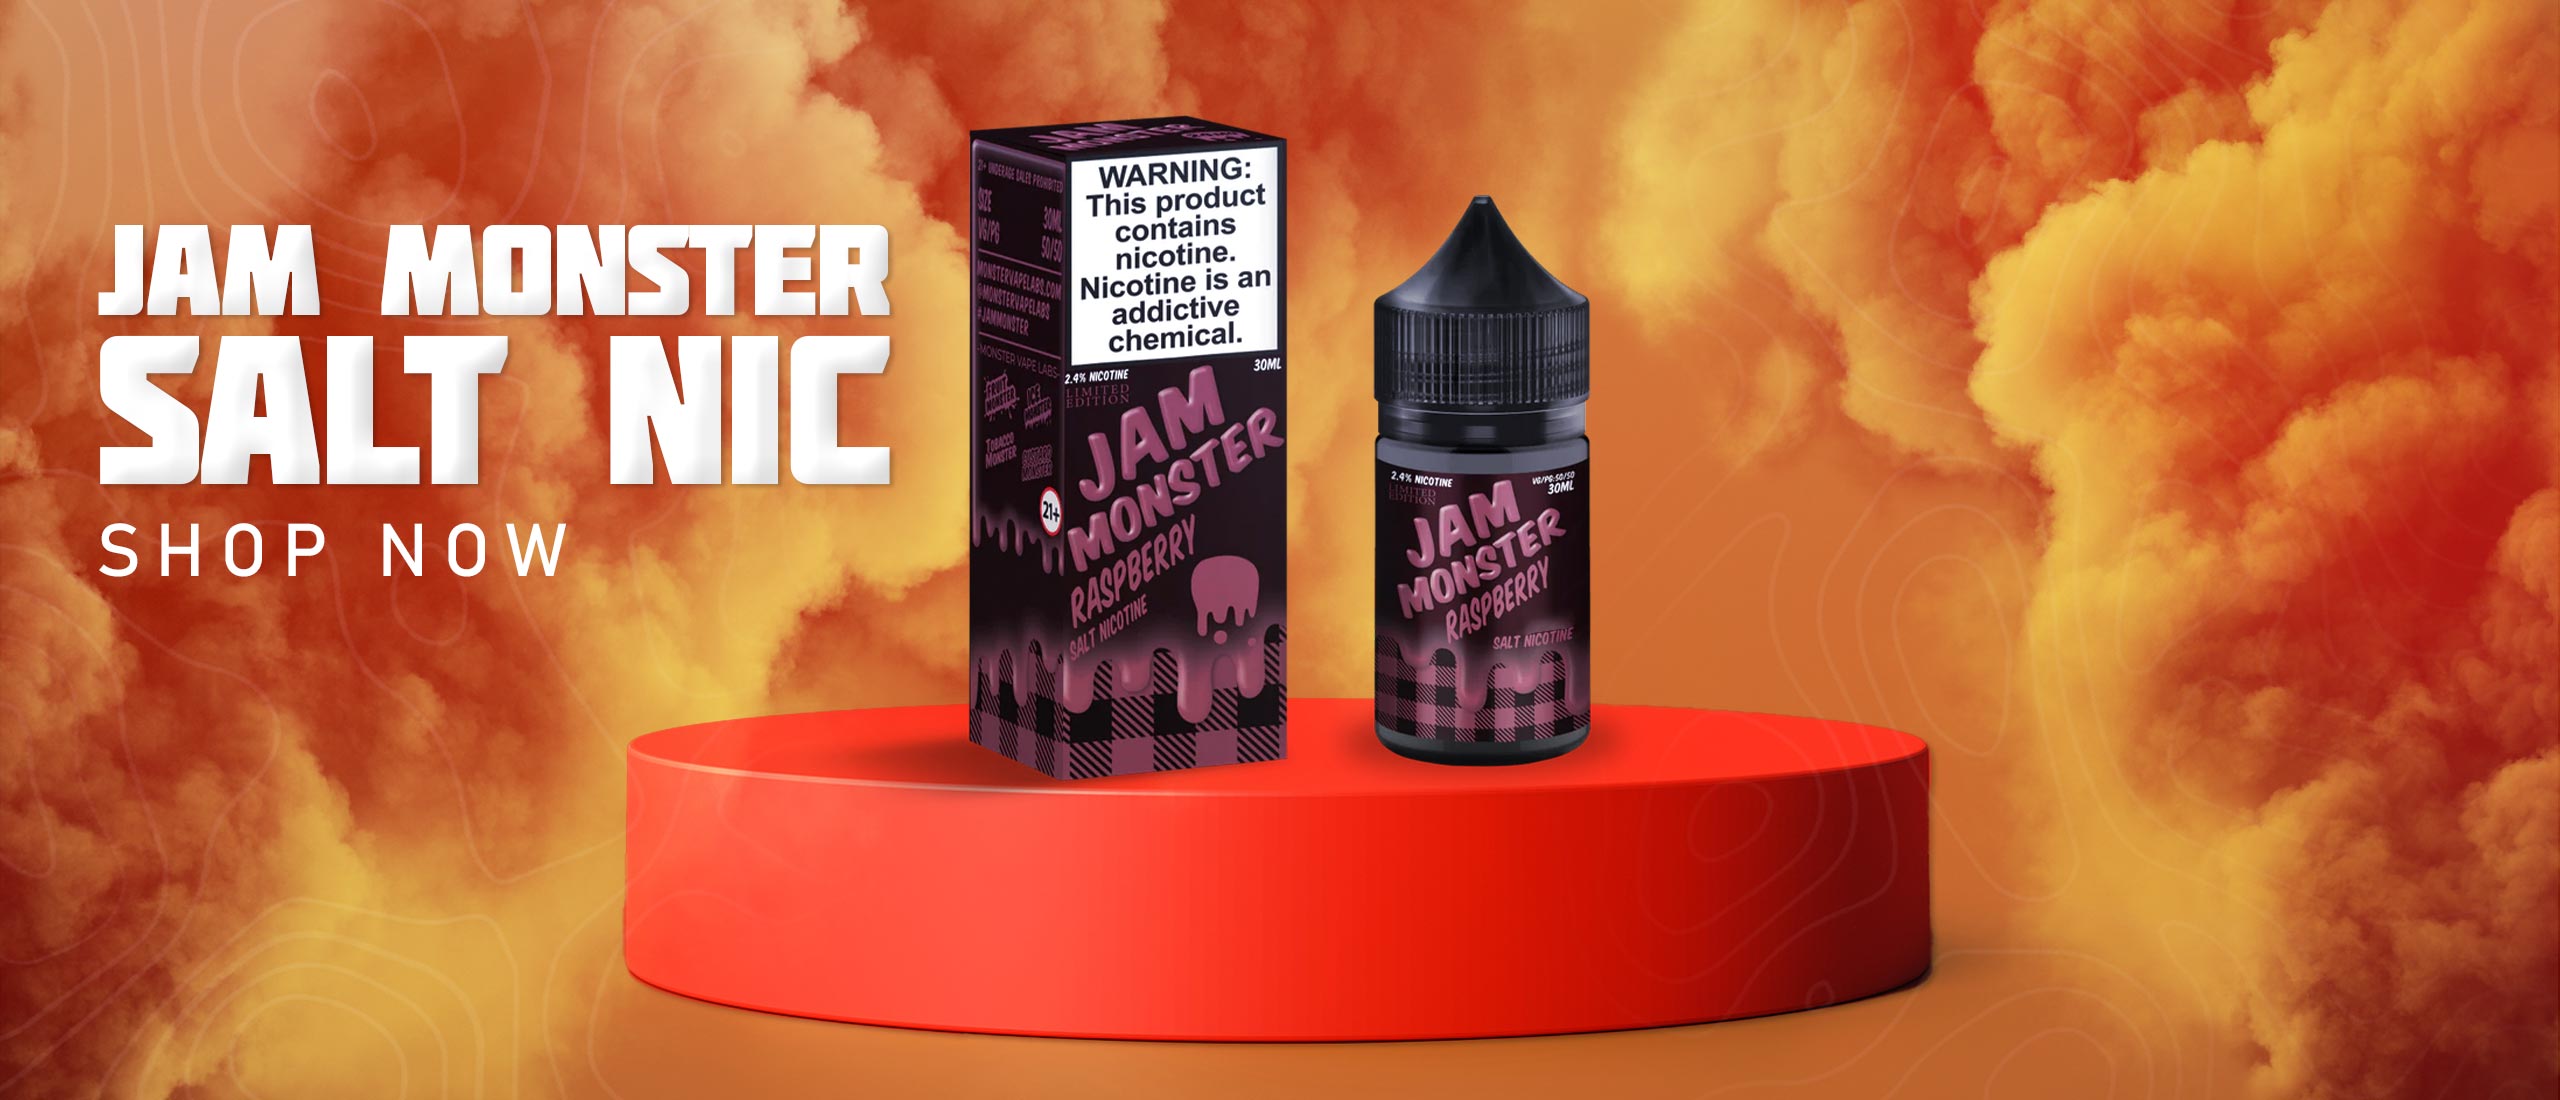 Jam Monster Salt Nic Hero Image